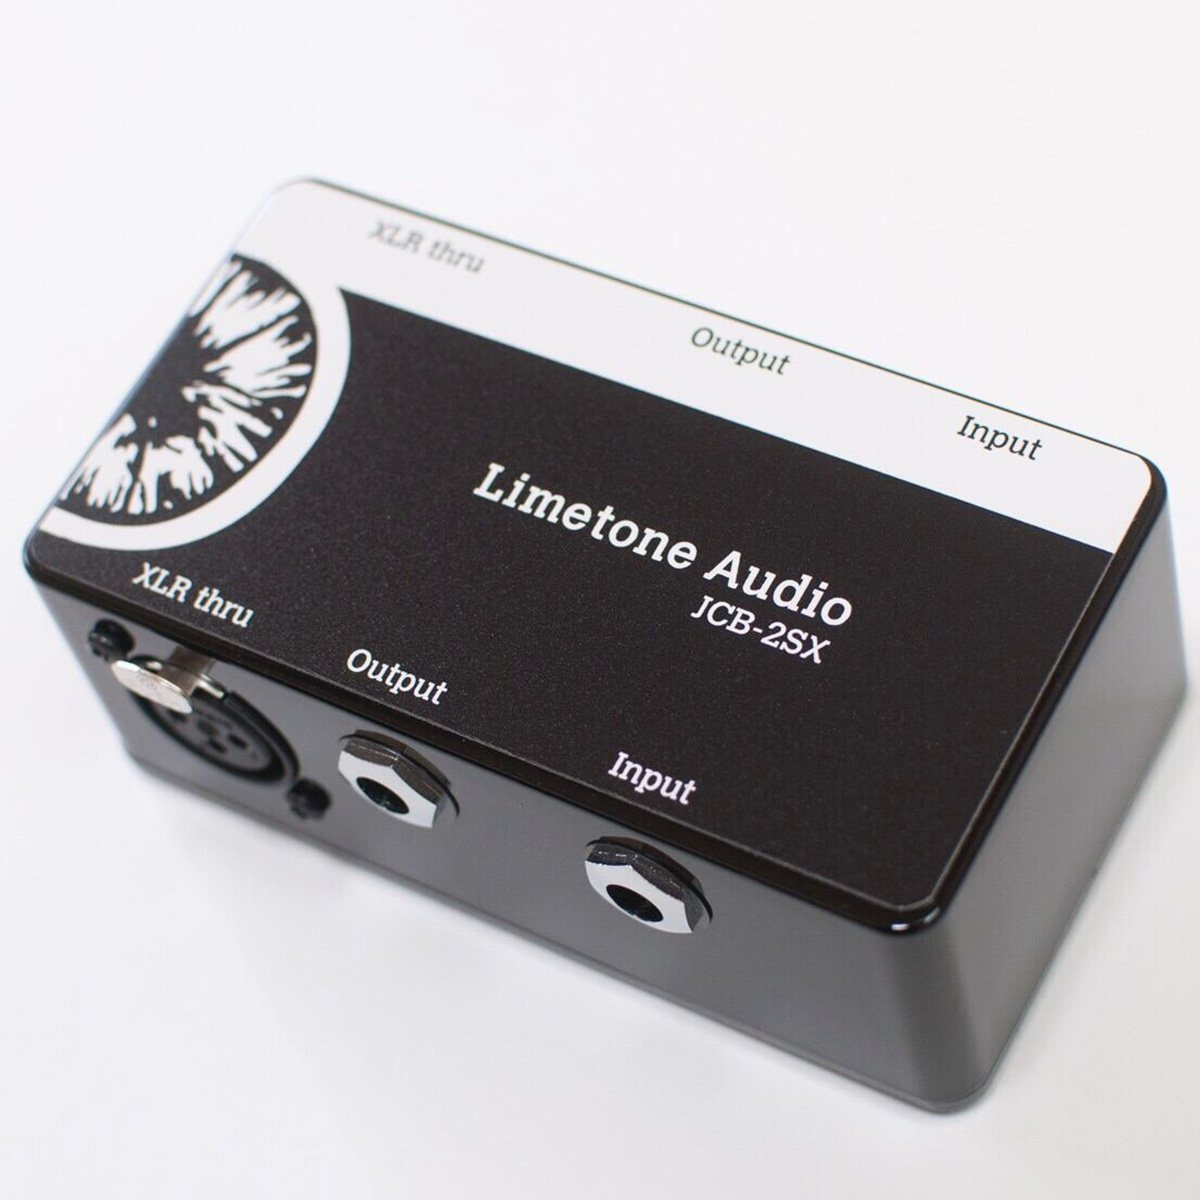 Limetone Audio JCB-4S-Flat ジャンクションボックス - 器材